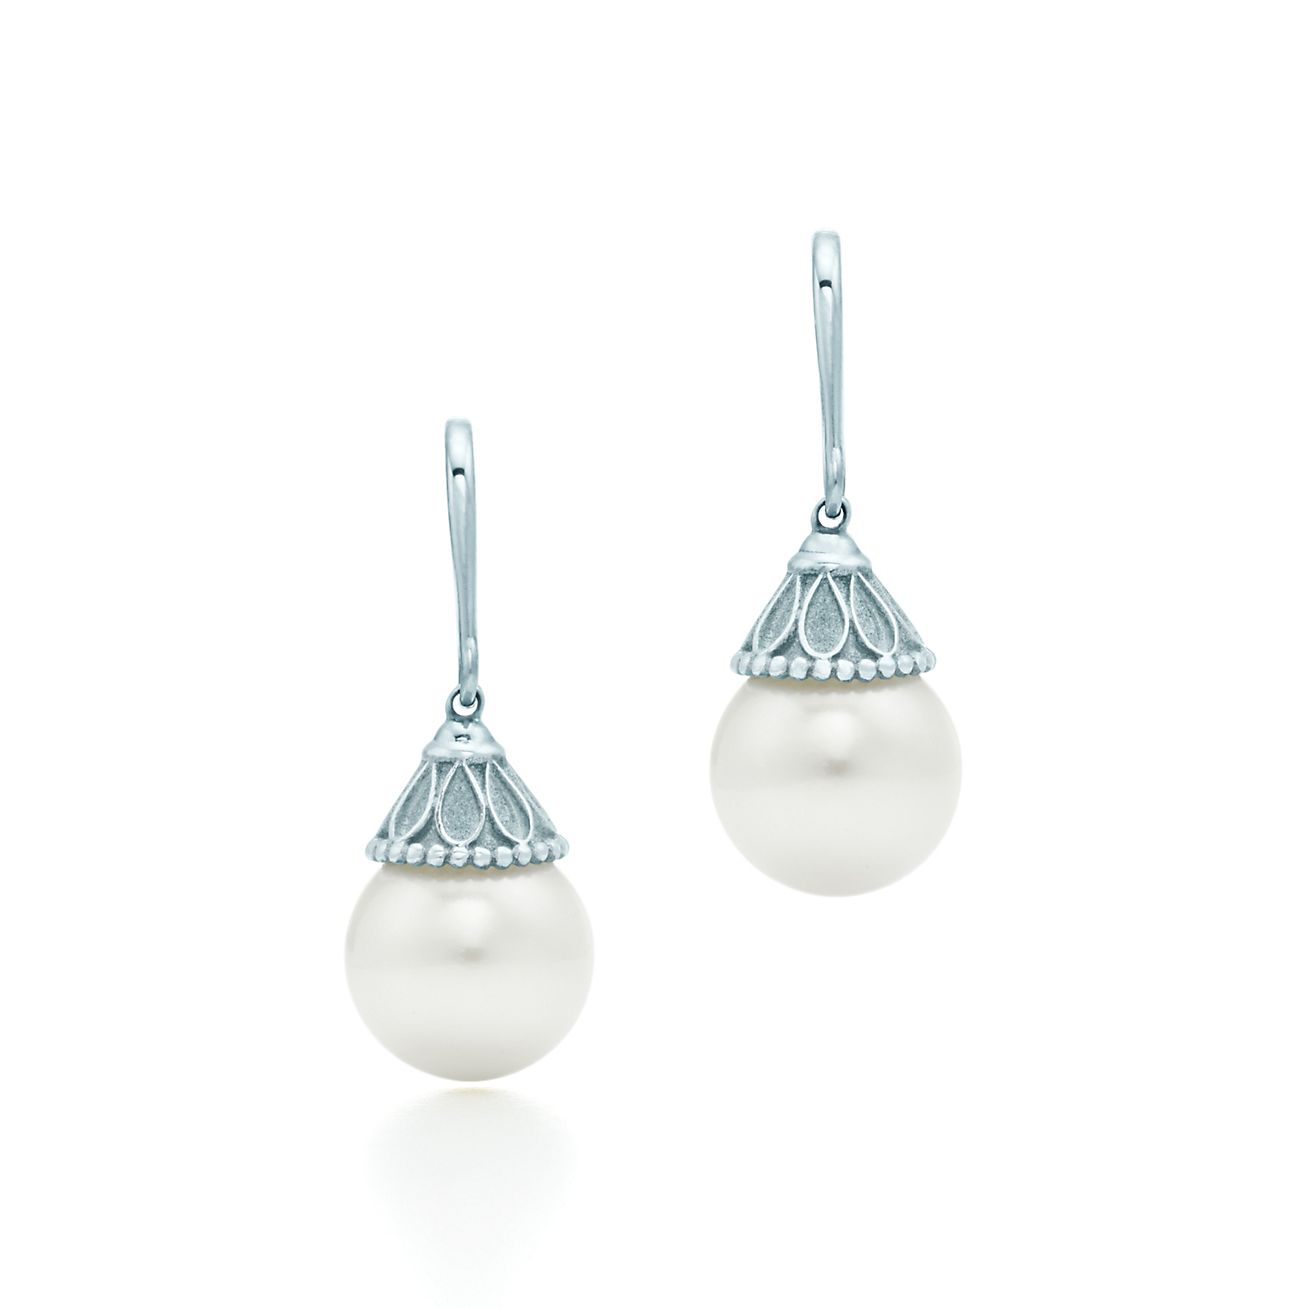 pearl earrings from tiffany & co